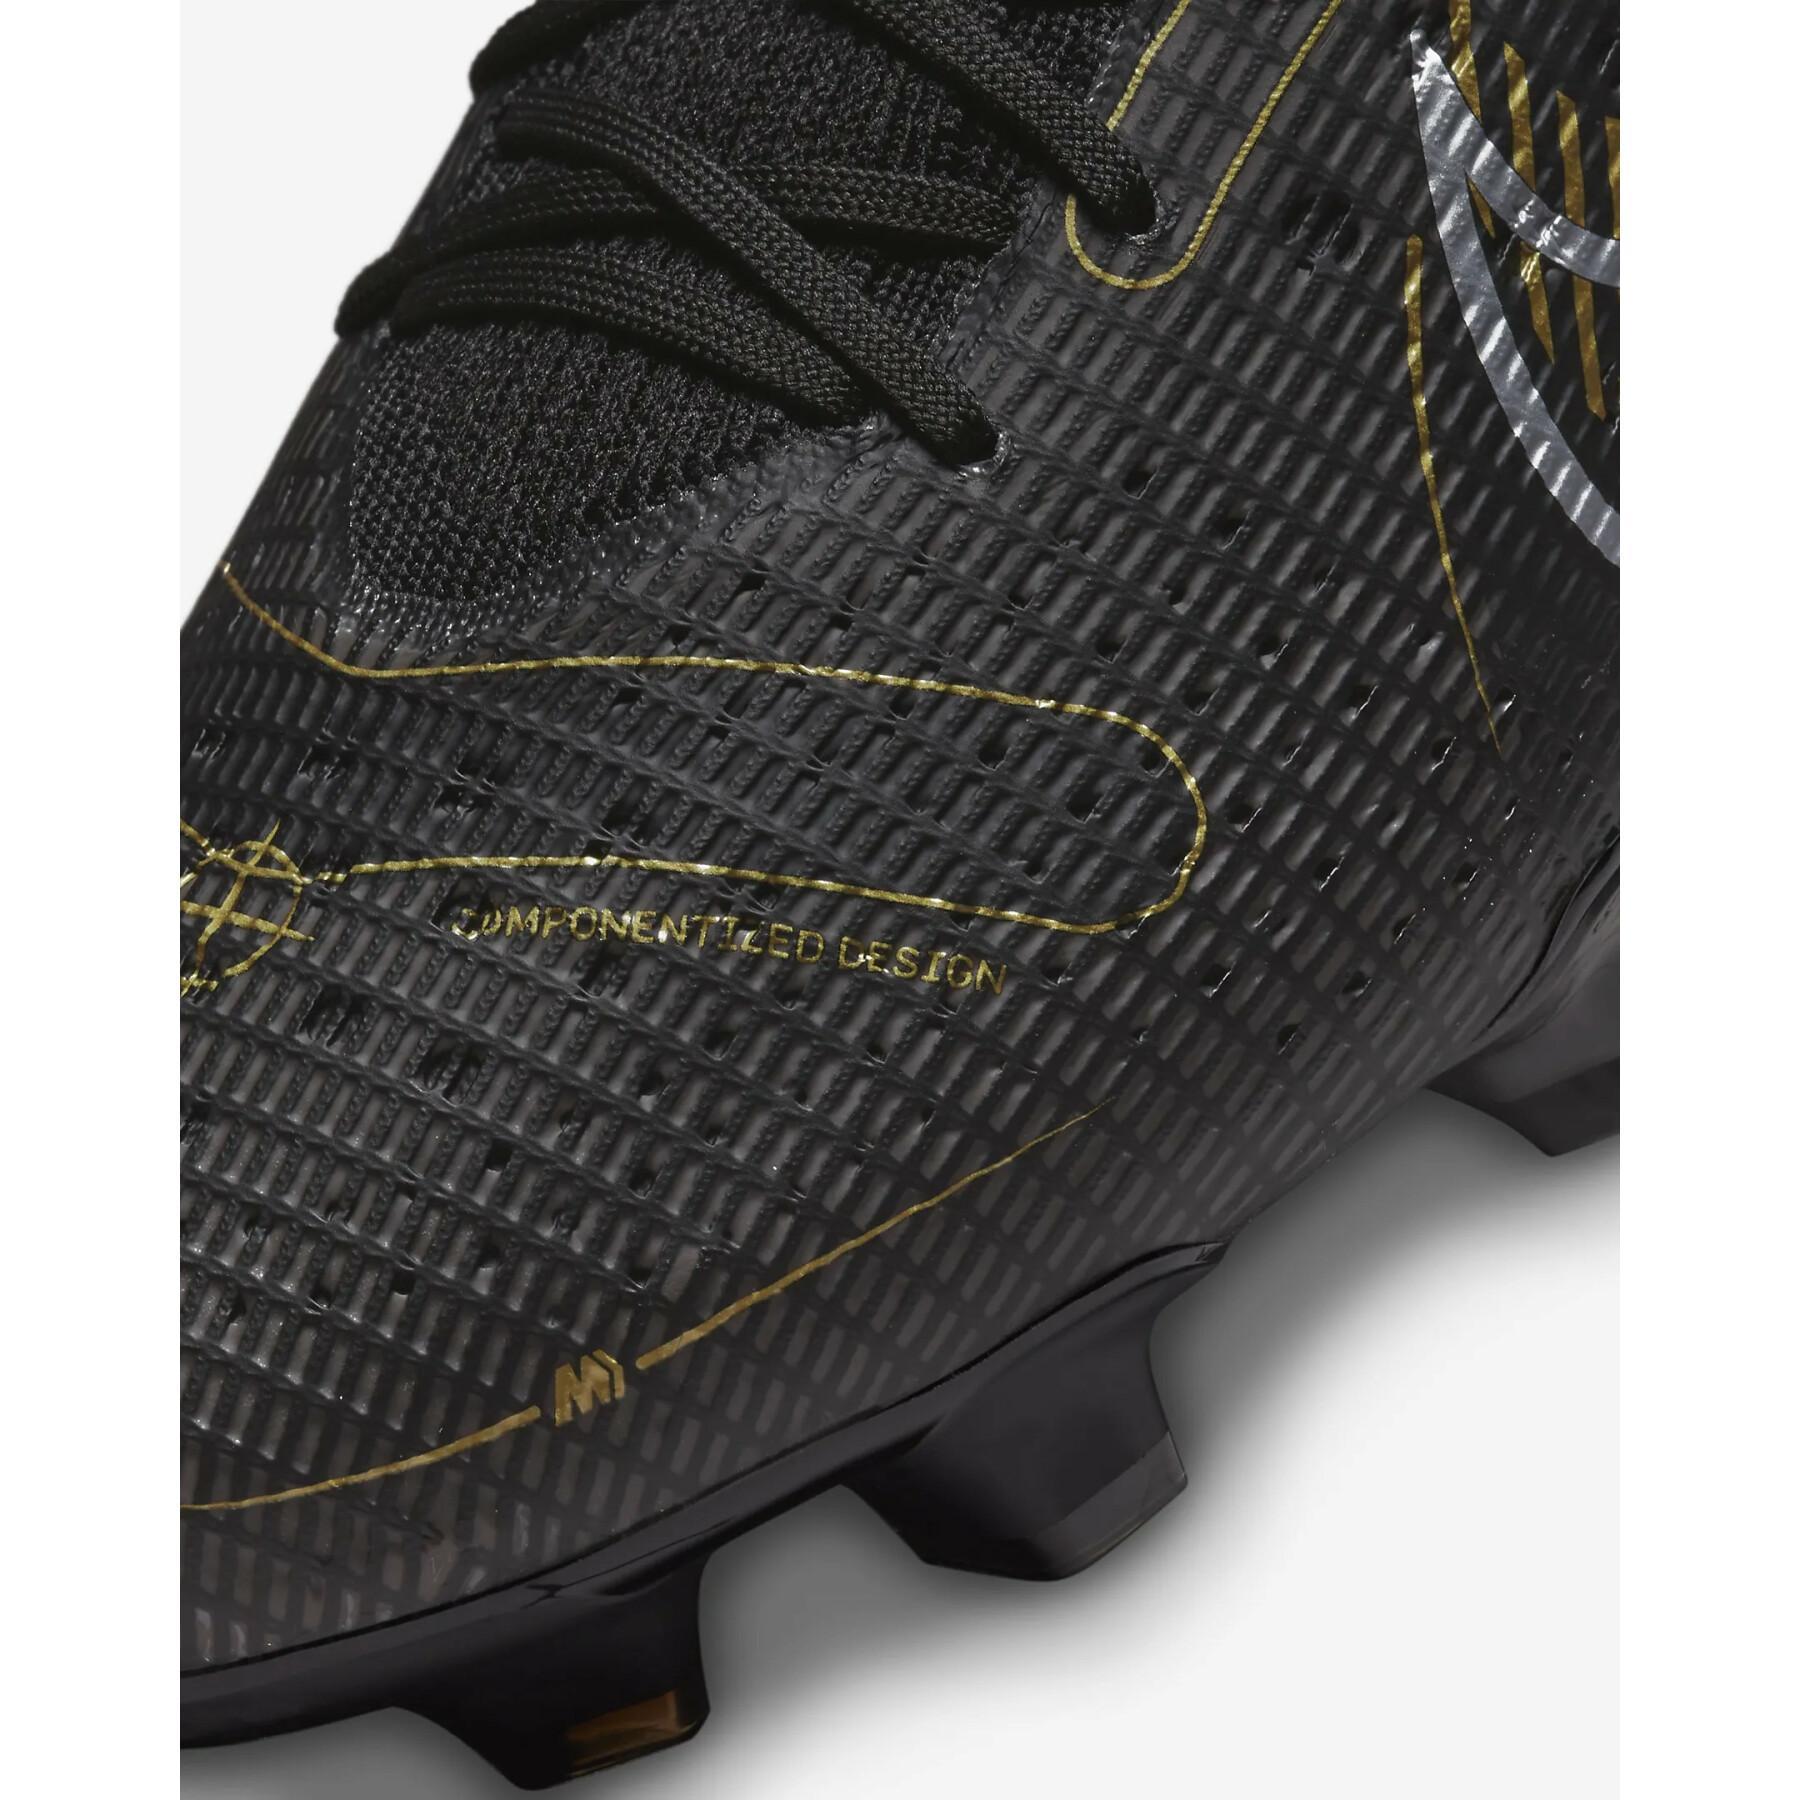 Scarpe da calcio Nike Superfly 8 pro FG